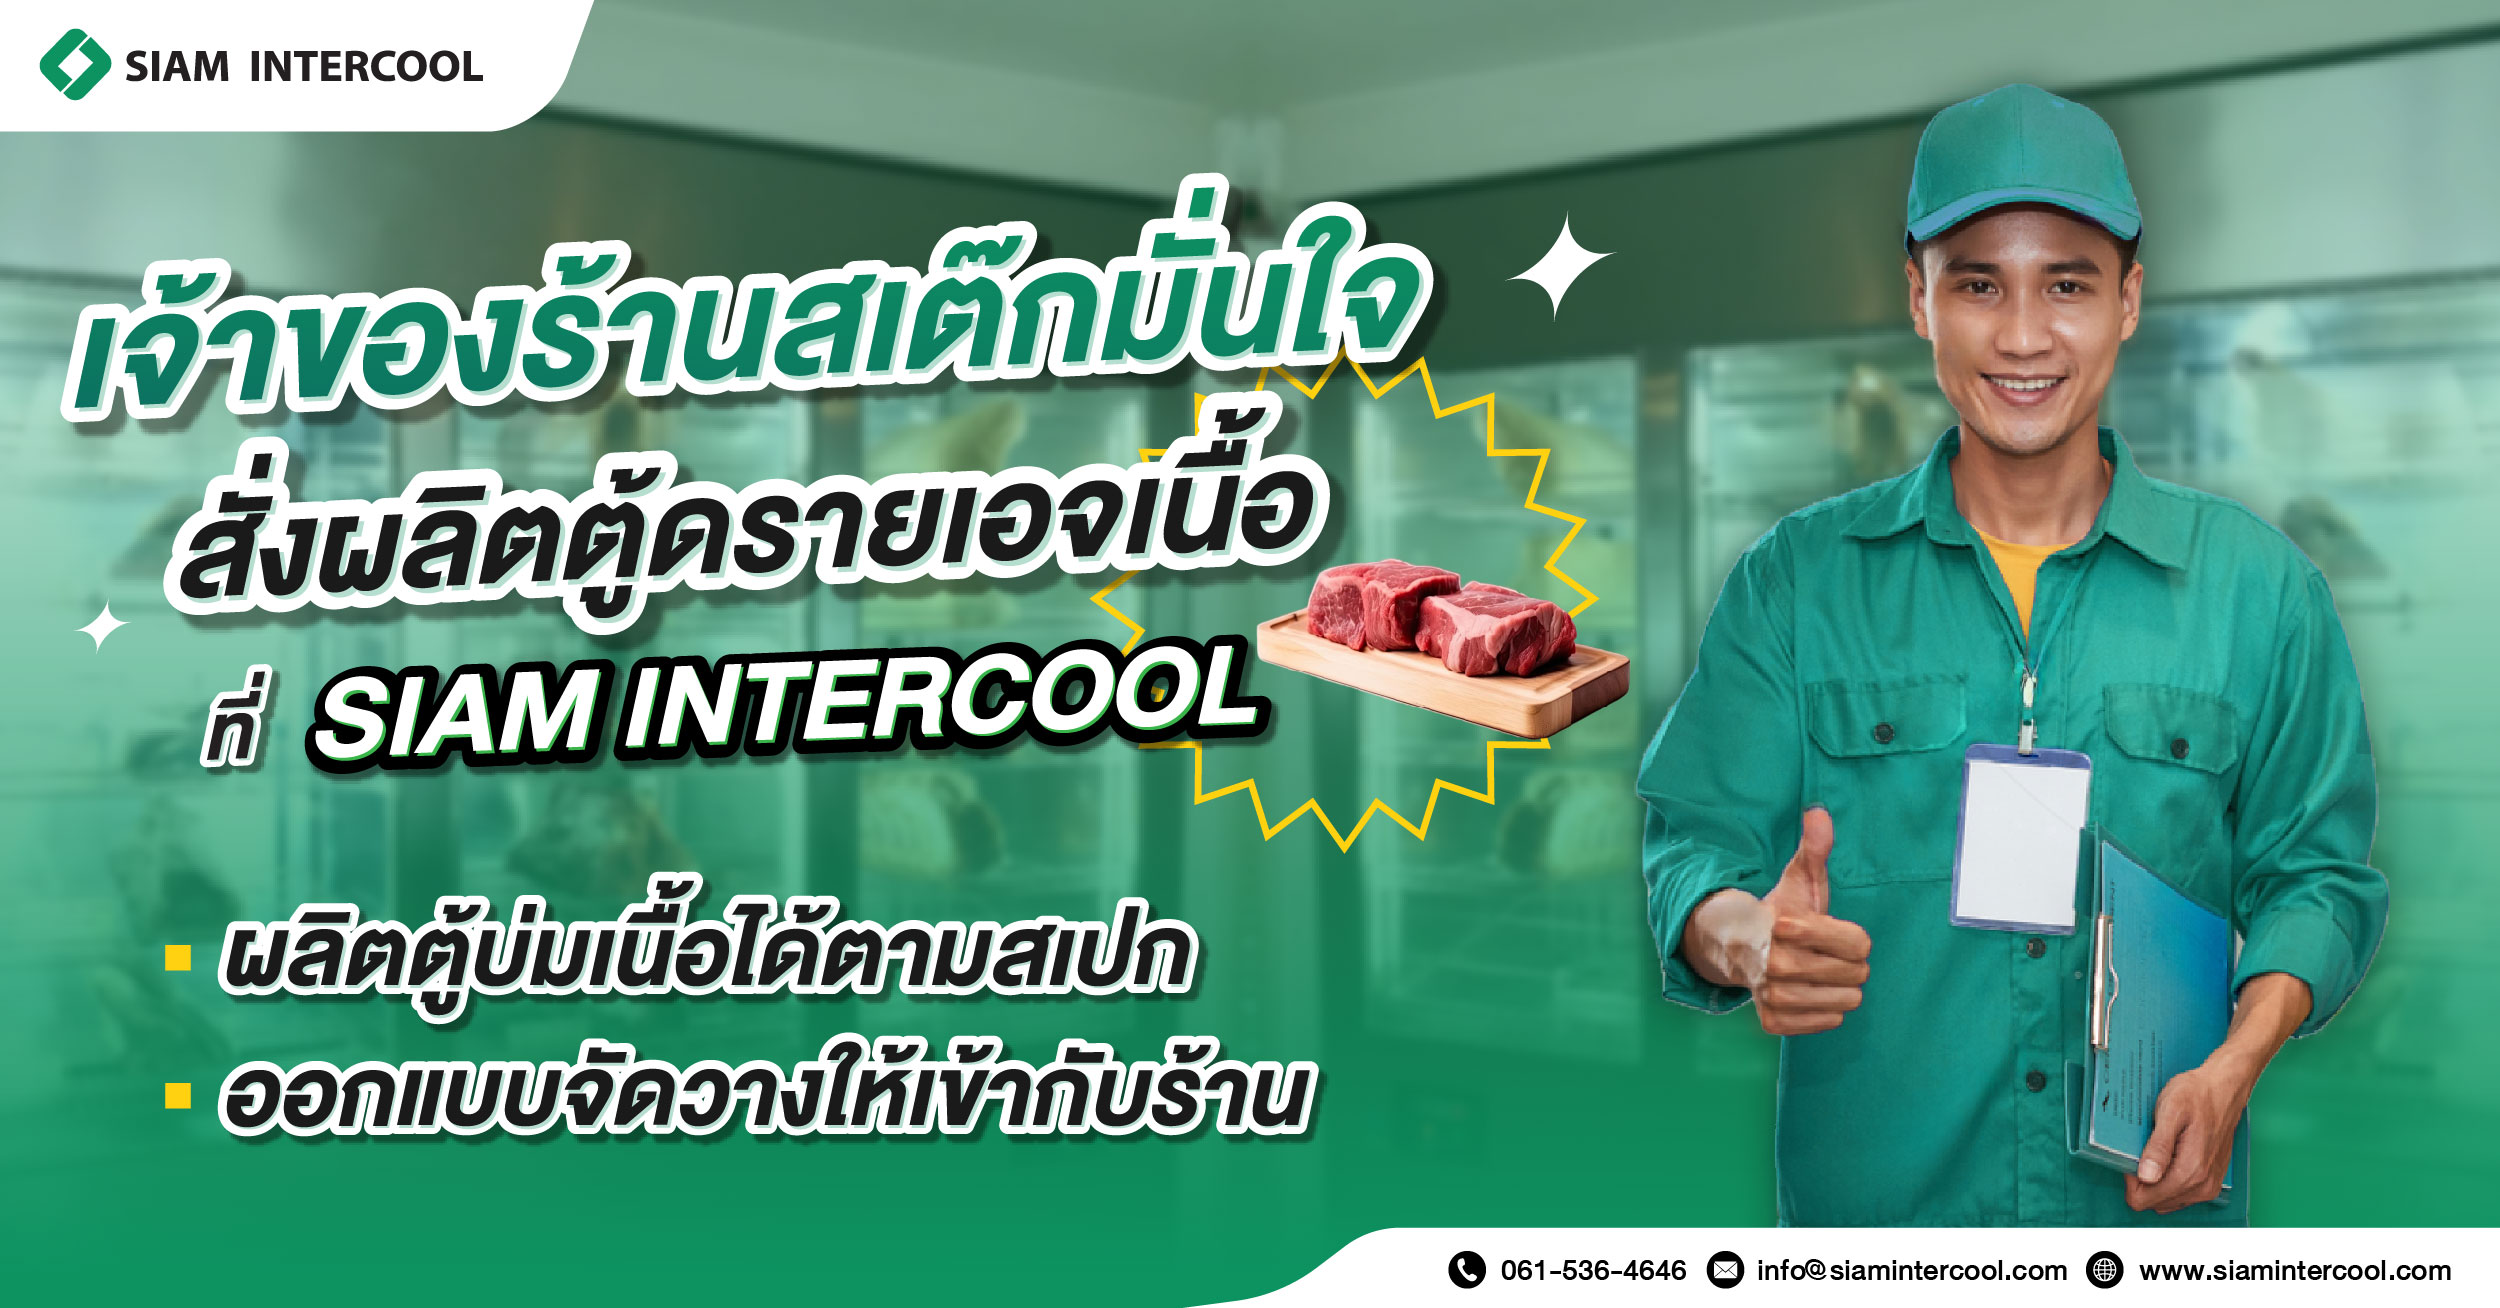 SIAM INTERCOOL รับผลิตตู้ดรายเอจเนื้อเพื่อร้านสเต๊กโดยเฉพาะ ! 